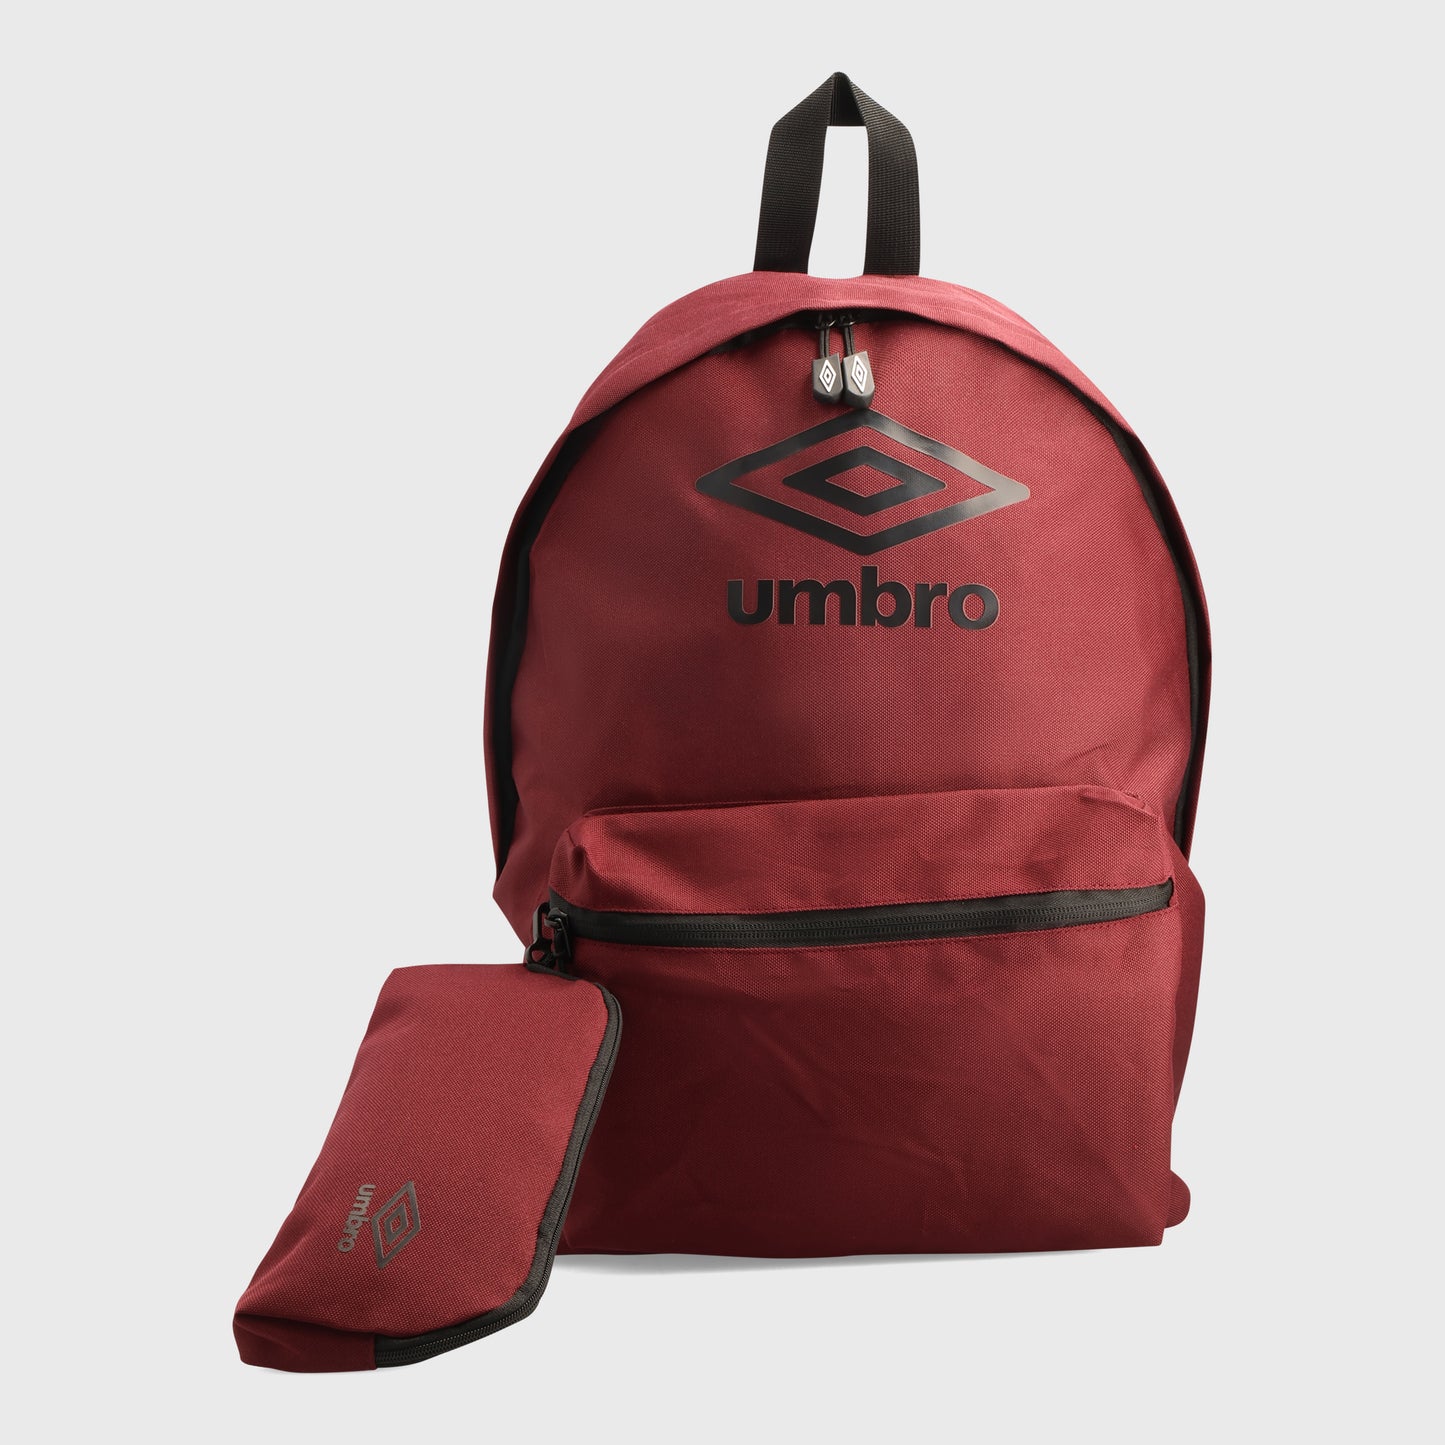 Umbro Back To School Backpack Set Red/Black _ 181150 _ Red